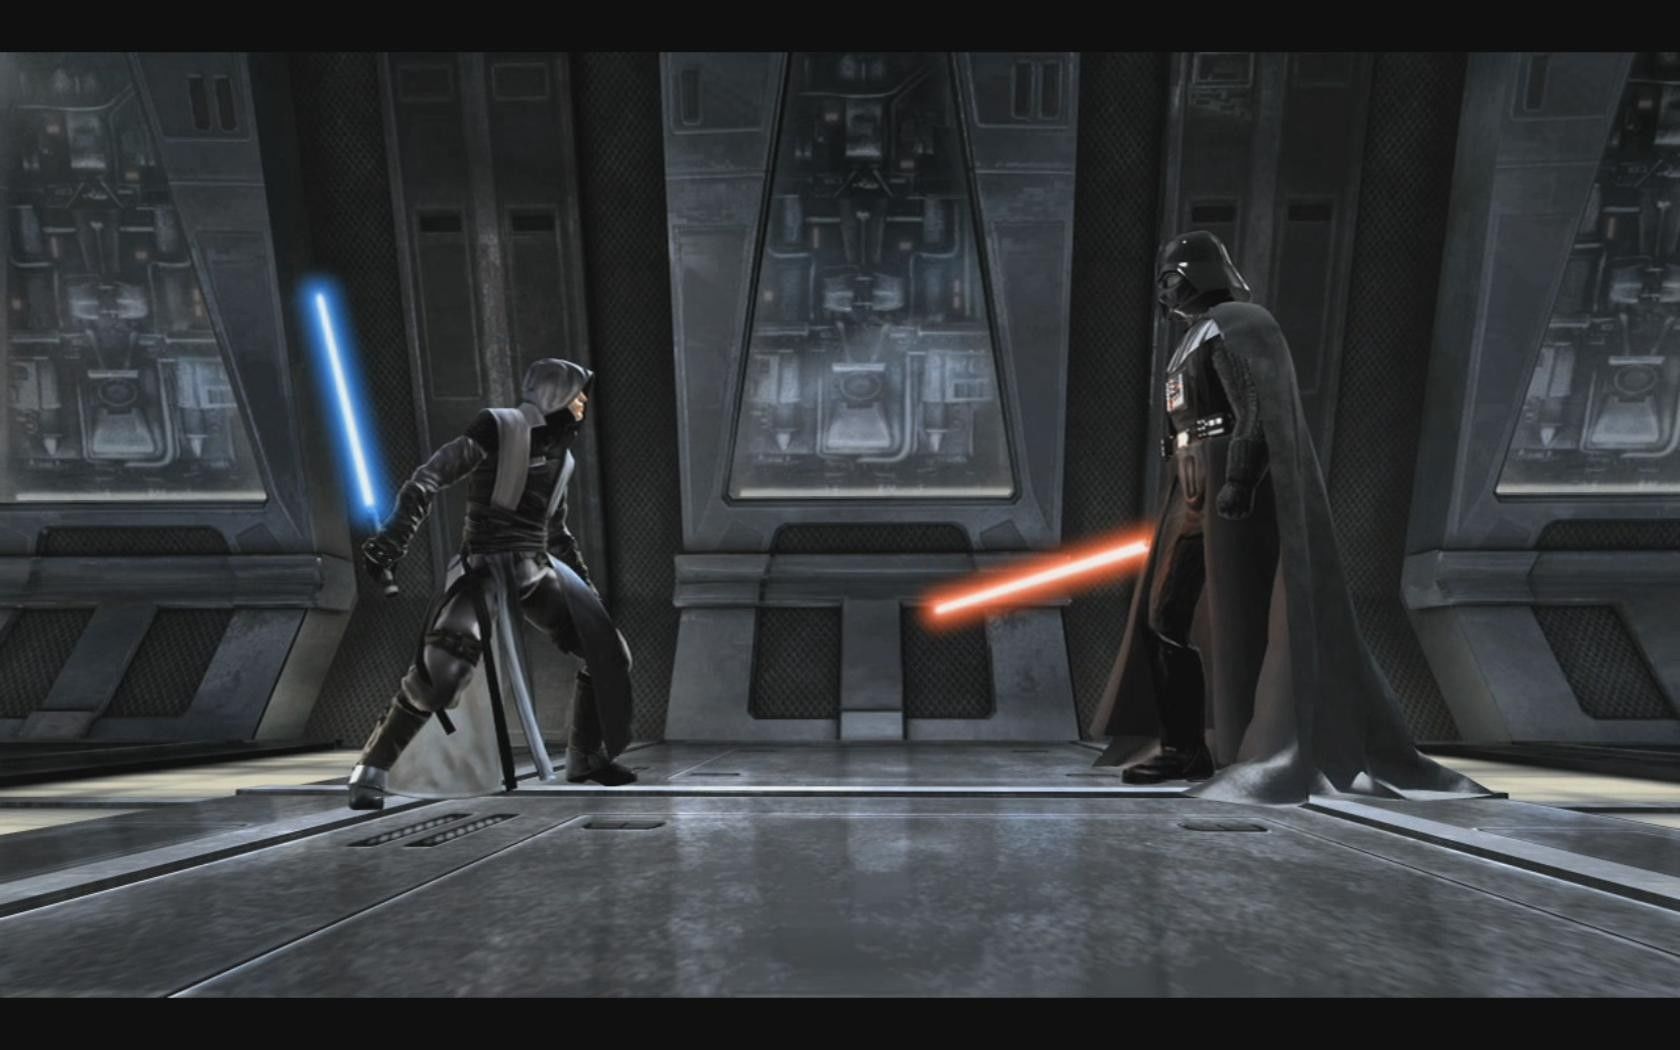 Starkiller vs Vader. Star wars battlefront, Star wars unleashed, Star wars